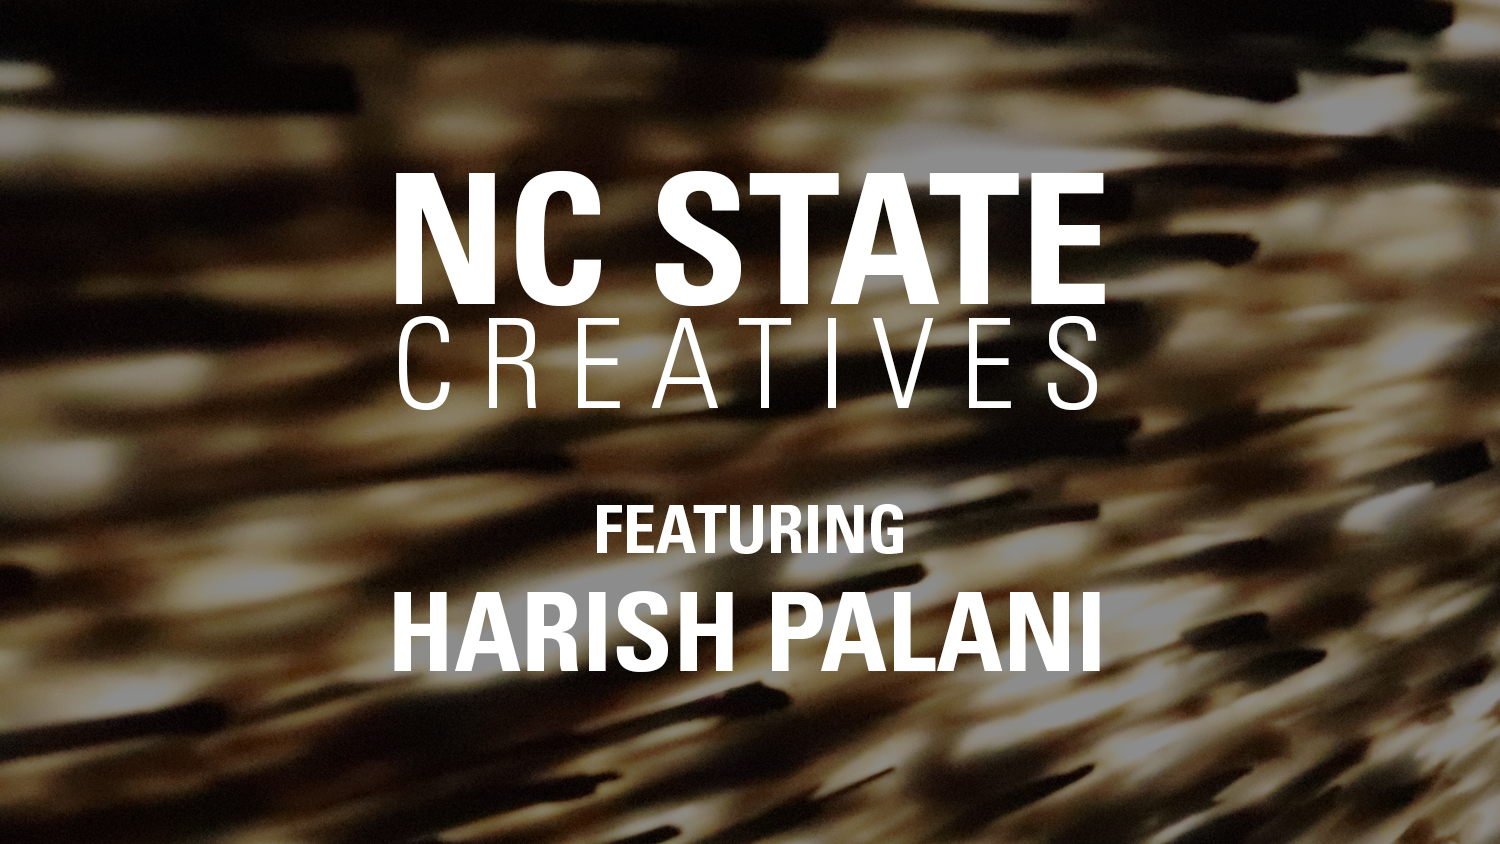 NC State Creatives - Harish Palani